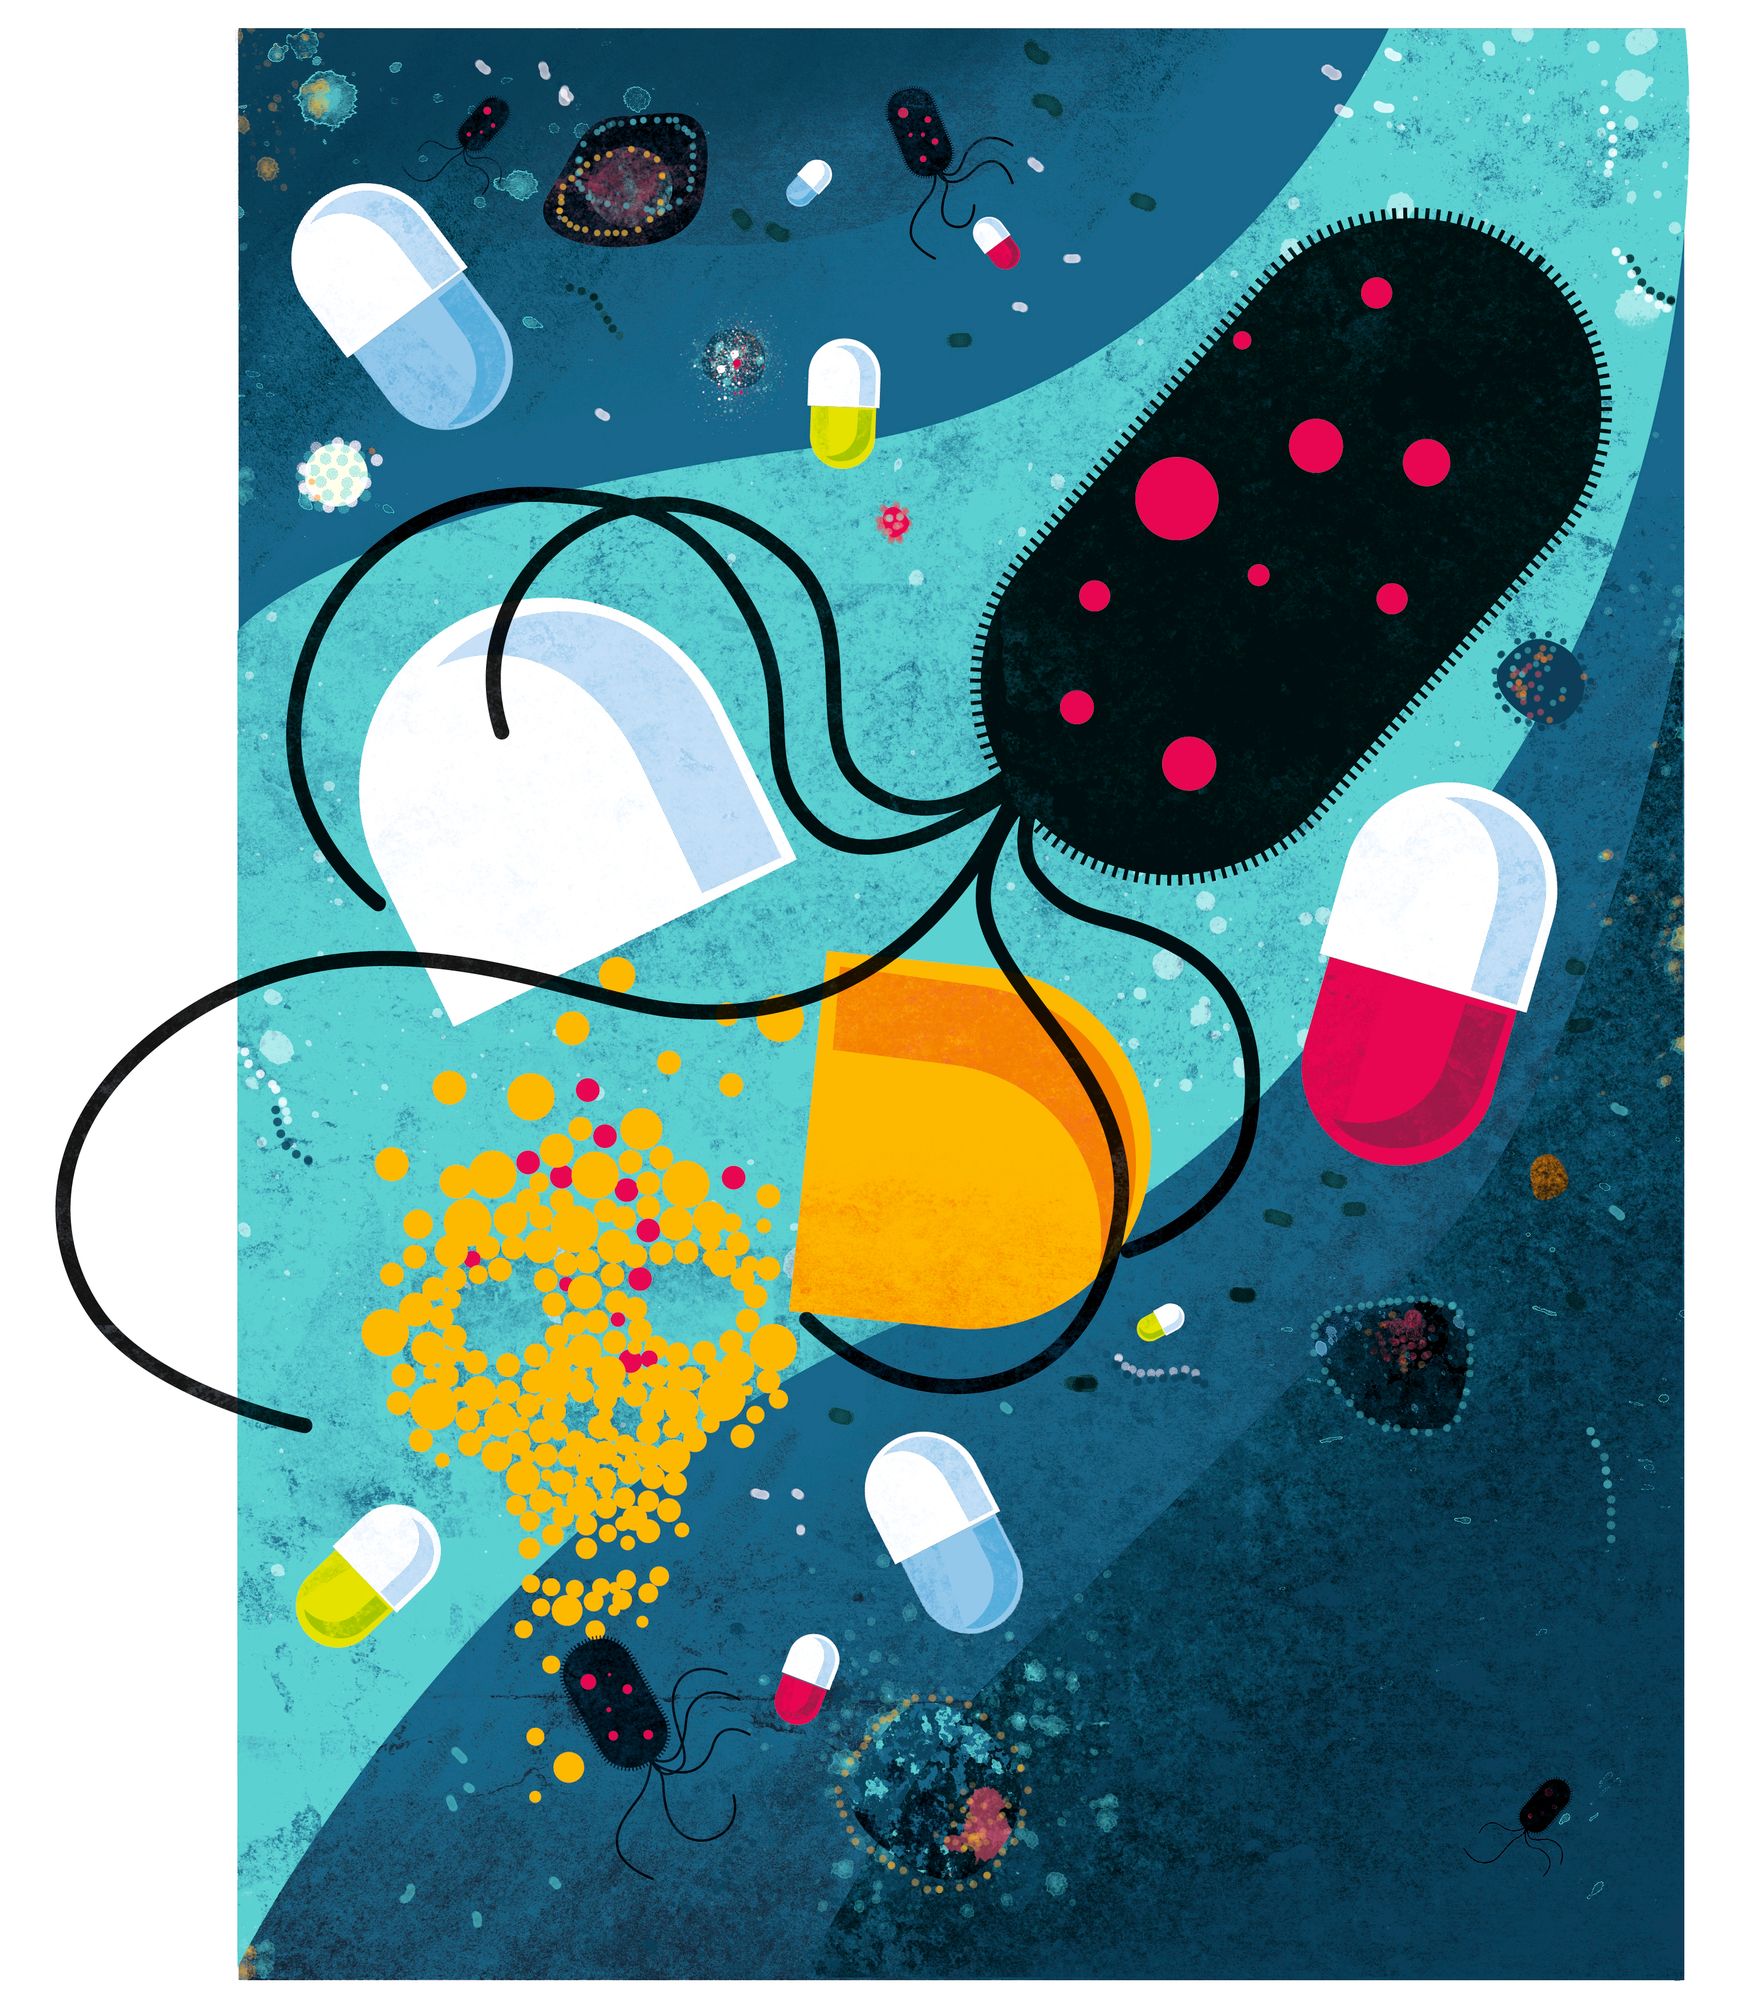 Yhä useampi valtio saattaa maksaa antibiooteista enemmän, jotta niitä käytettäisiin vähemmän. © Anu Nieminen